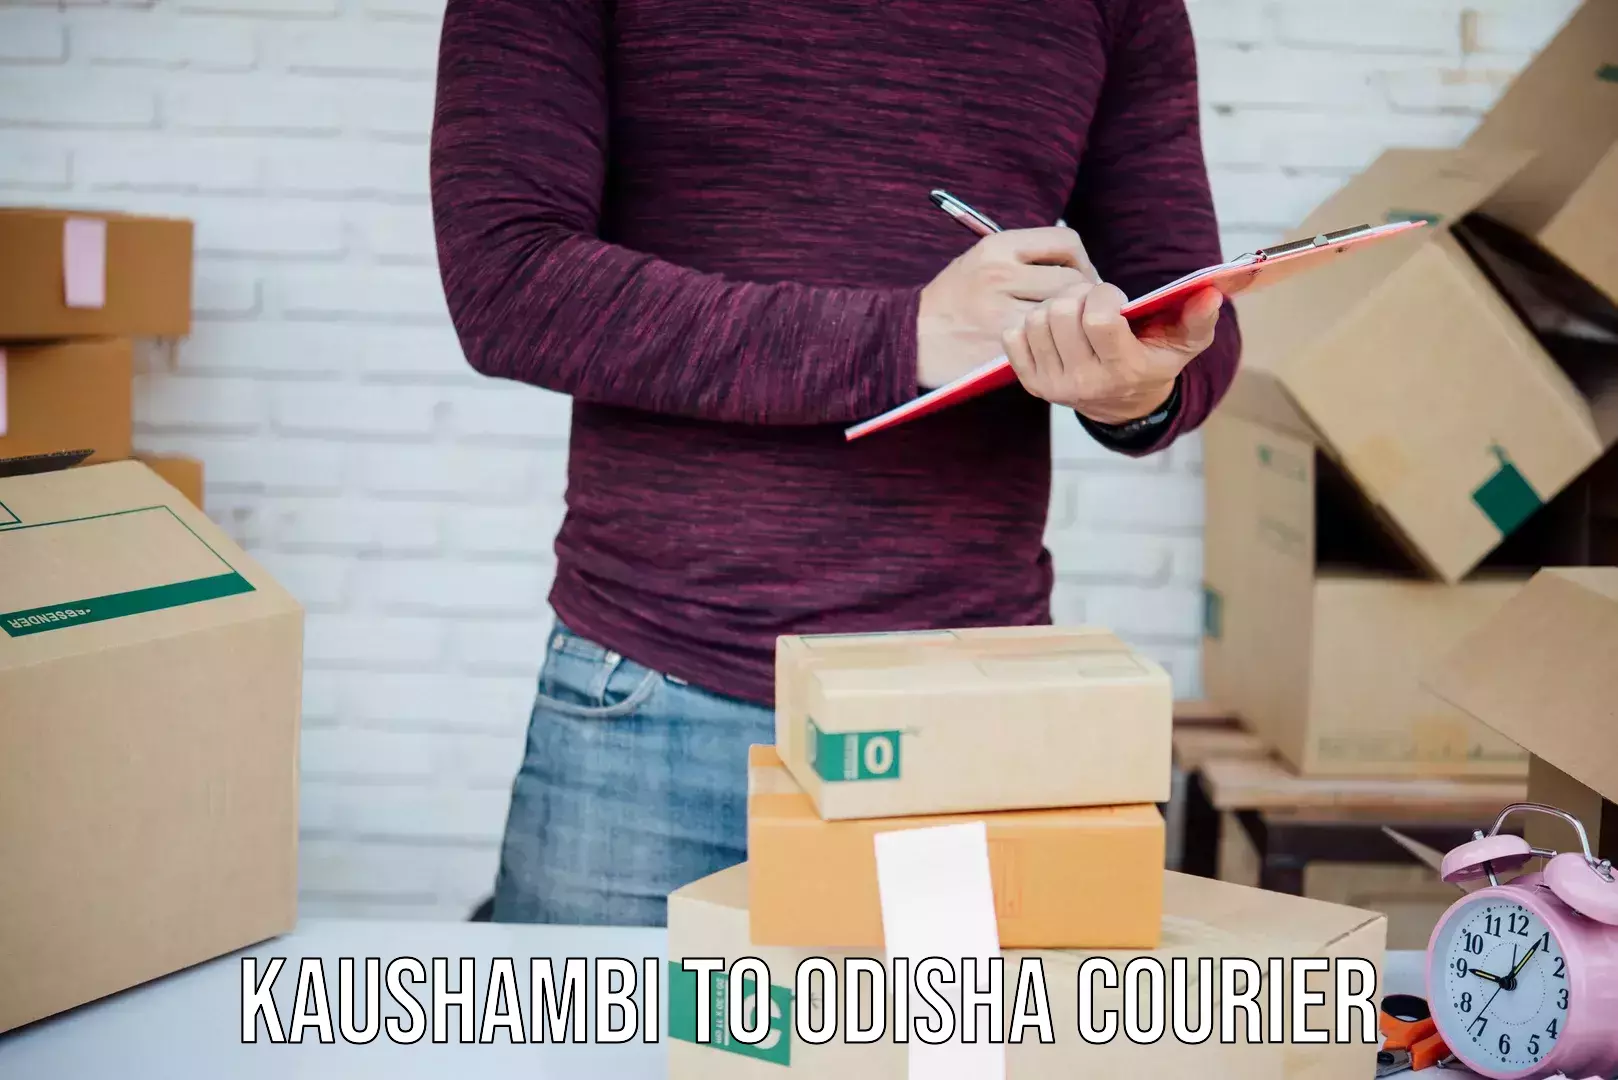 Custom courier packaging in Kaushambi to Odisha